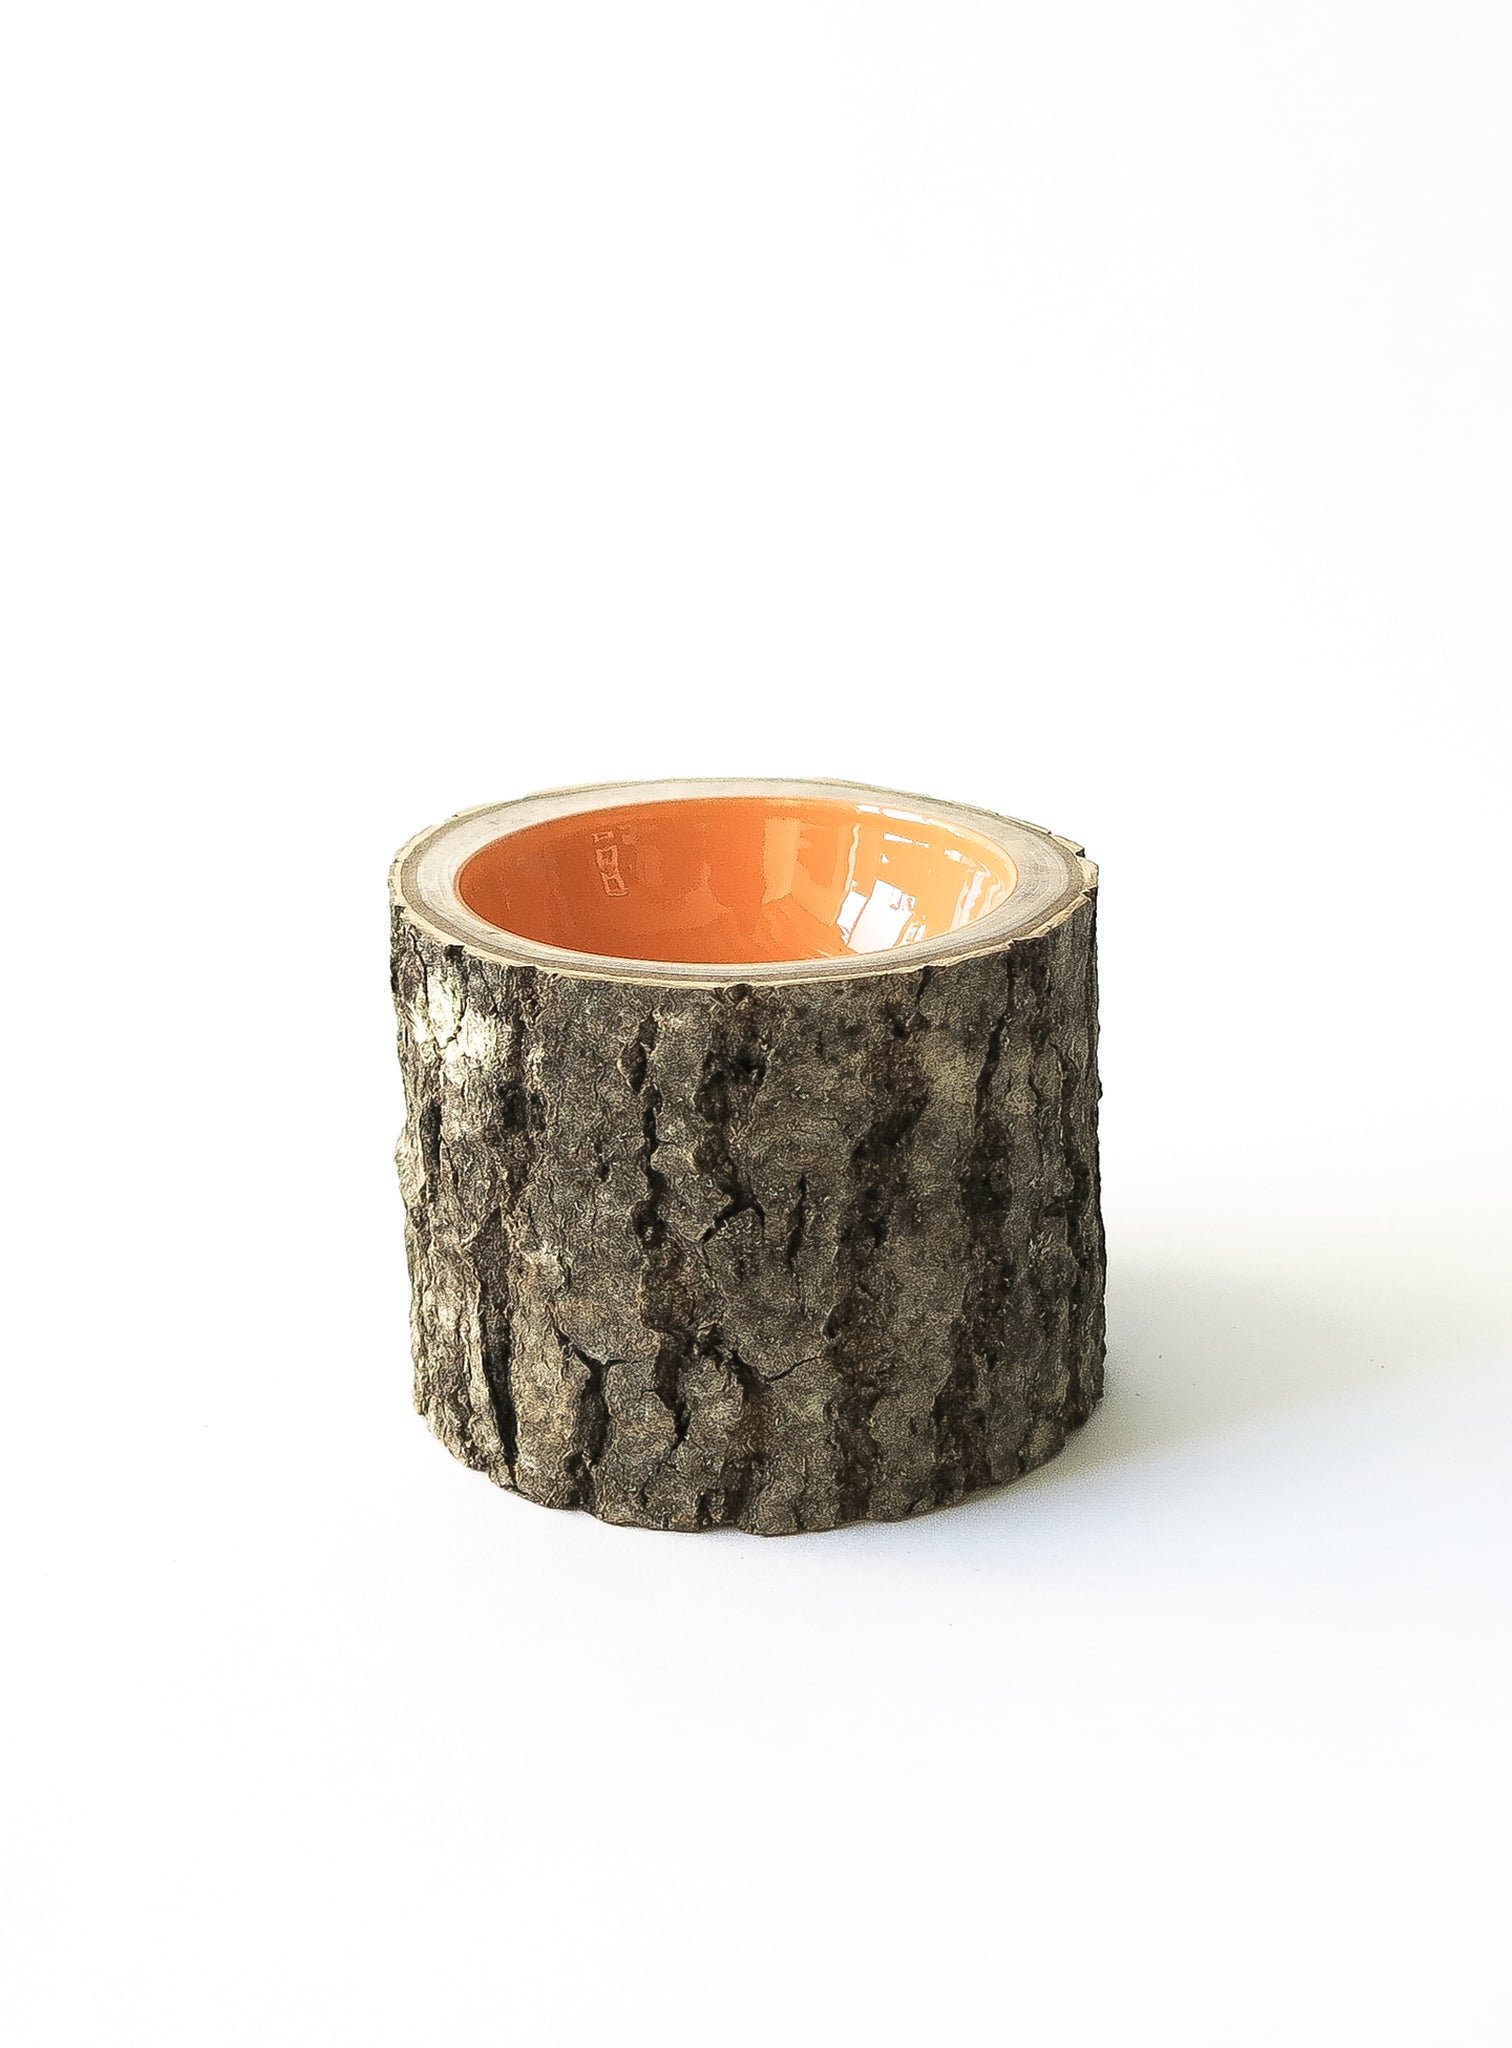 Log Bowl | Size 4 | Cantaloupe